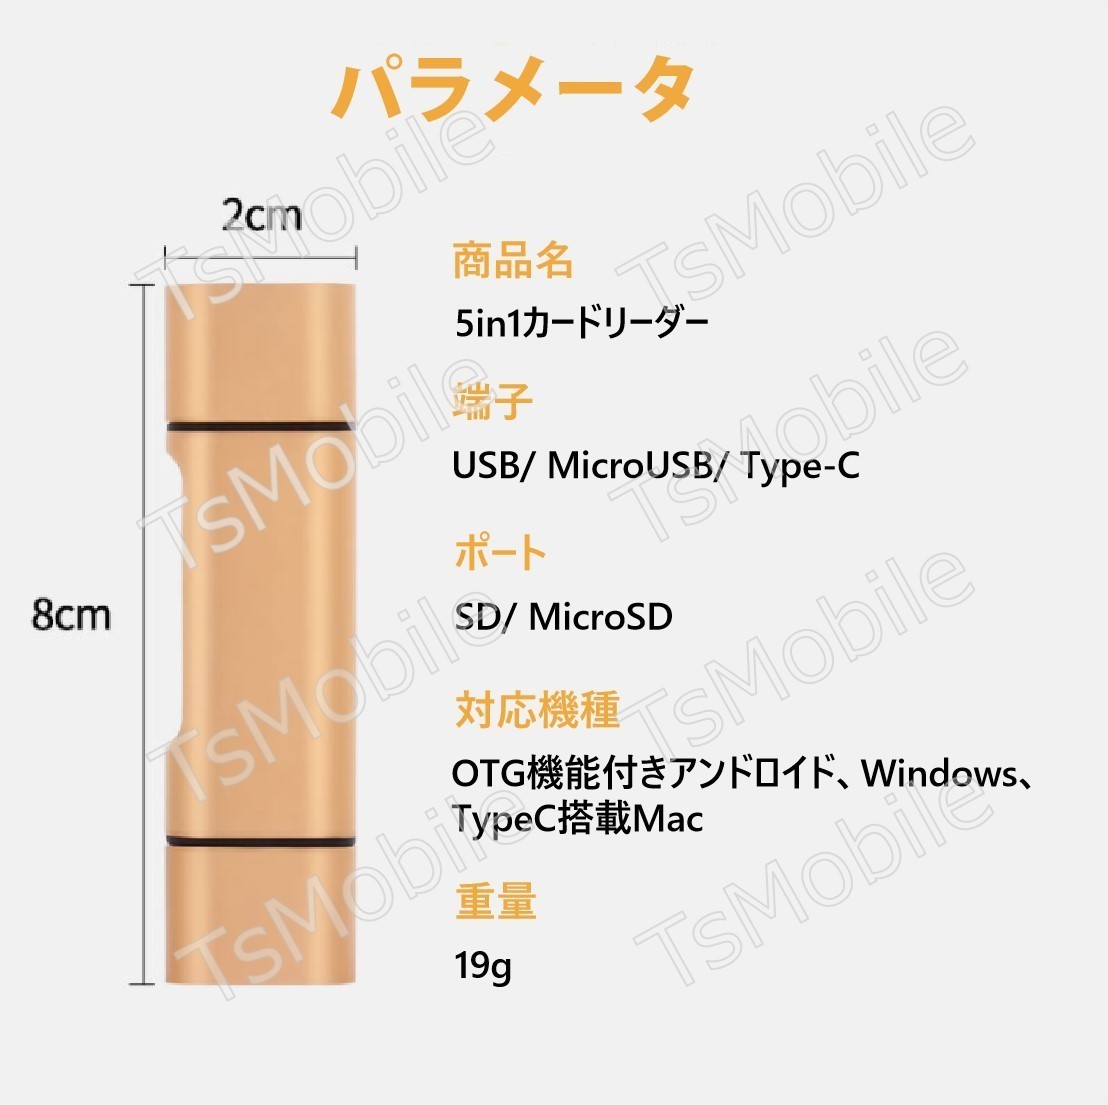 5in1 TypeC USB MicroUSB SD TFカードリーダー OTG変換コネクタ Macbookメモリカードデータ移行